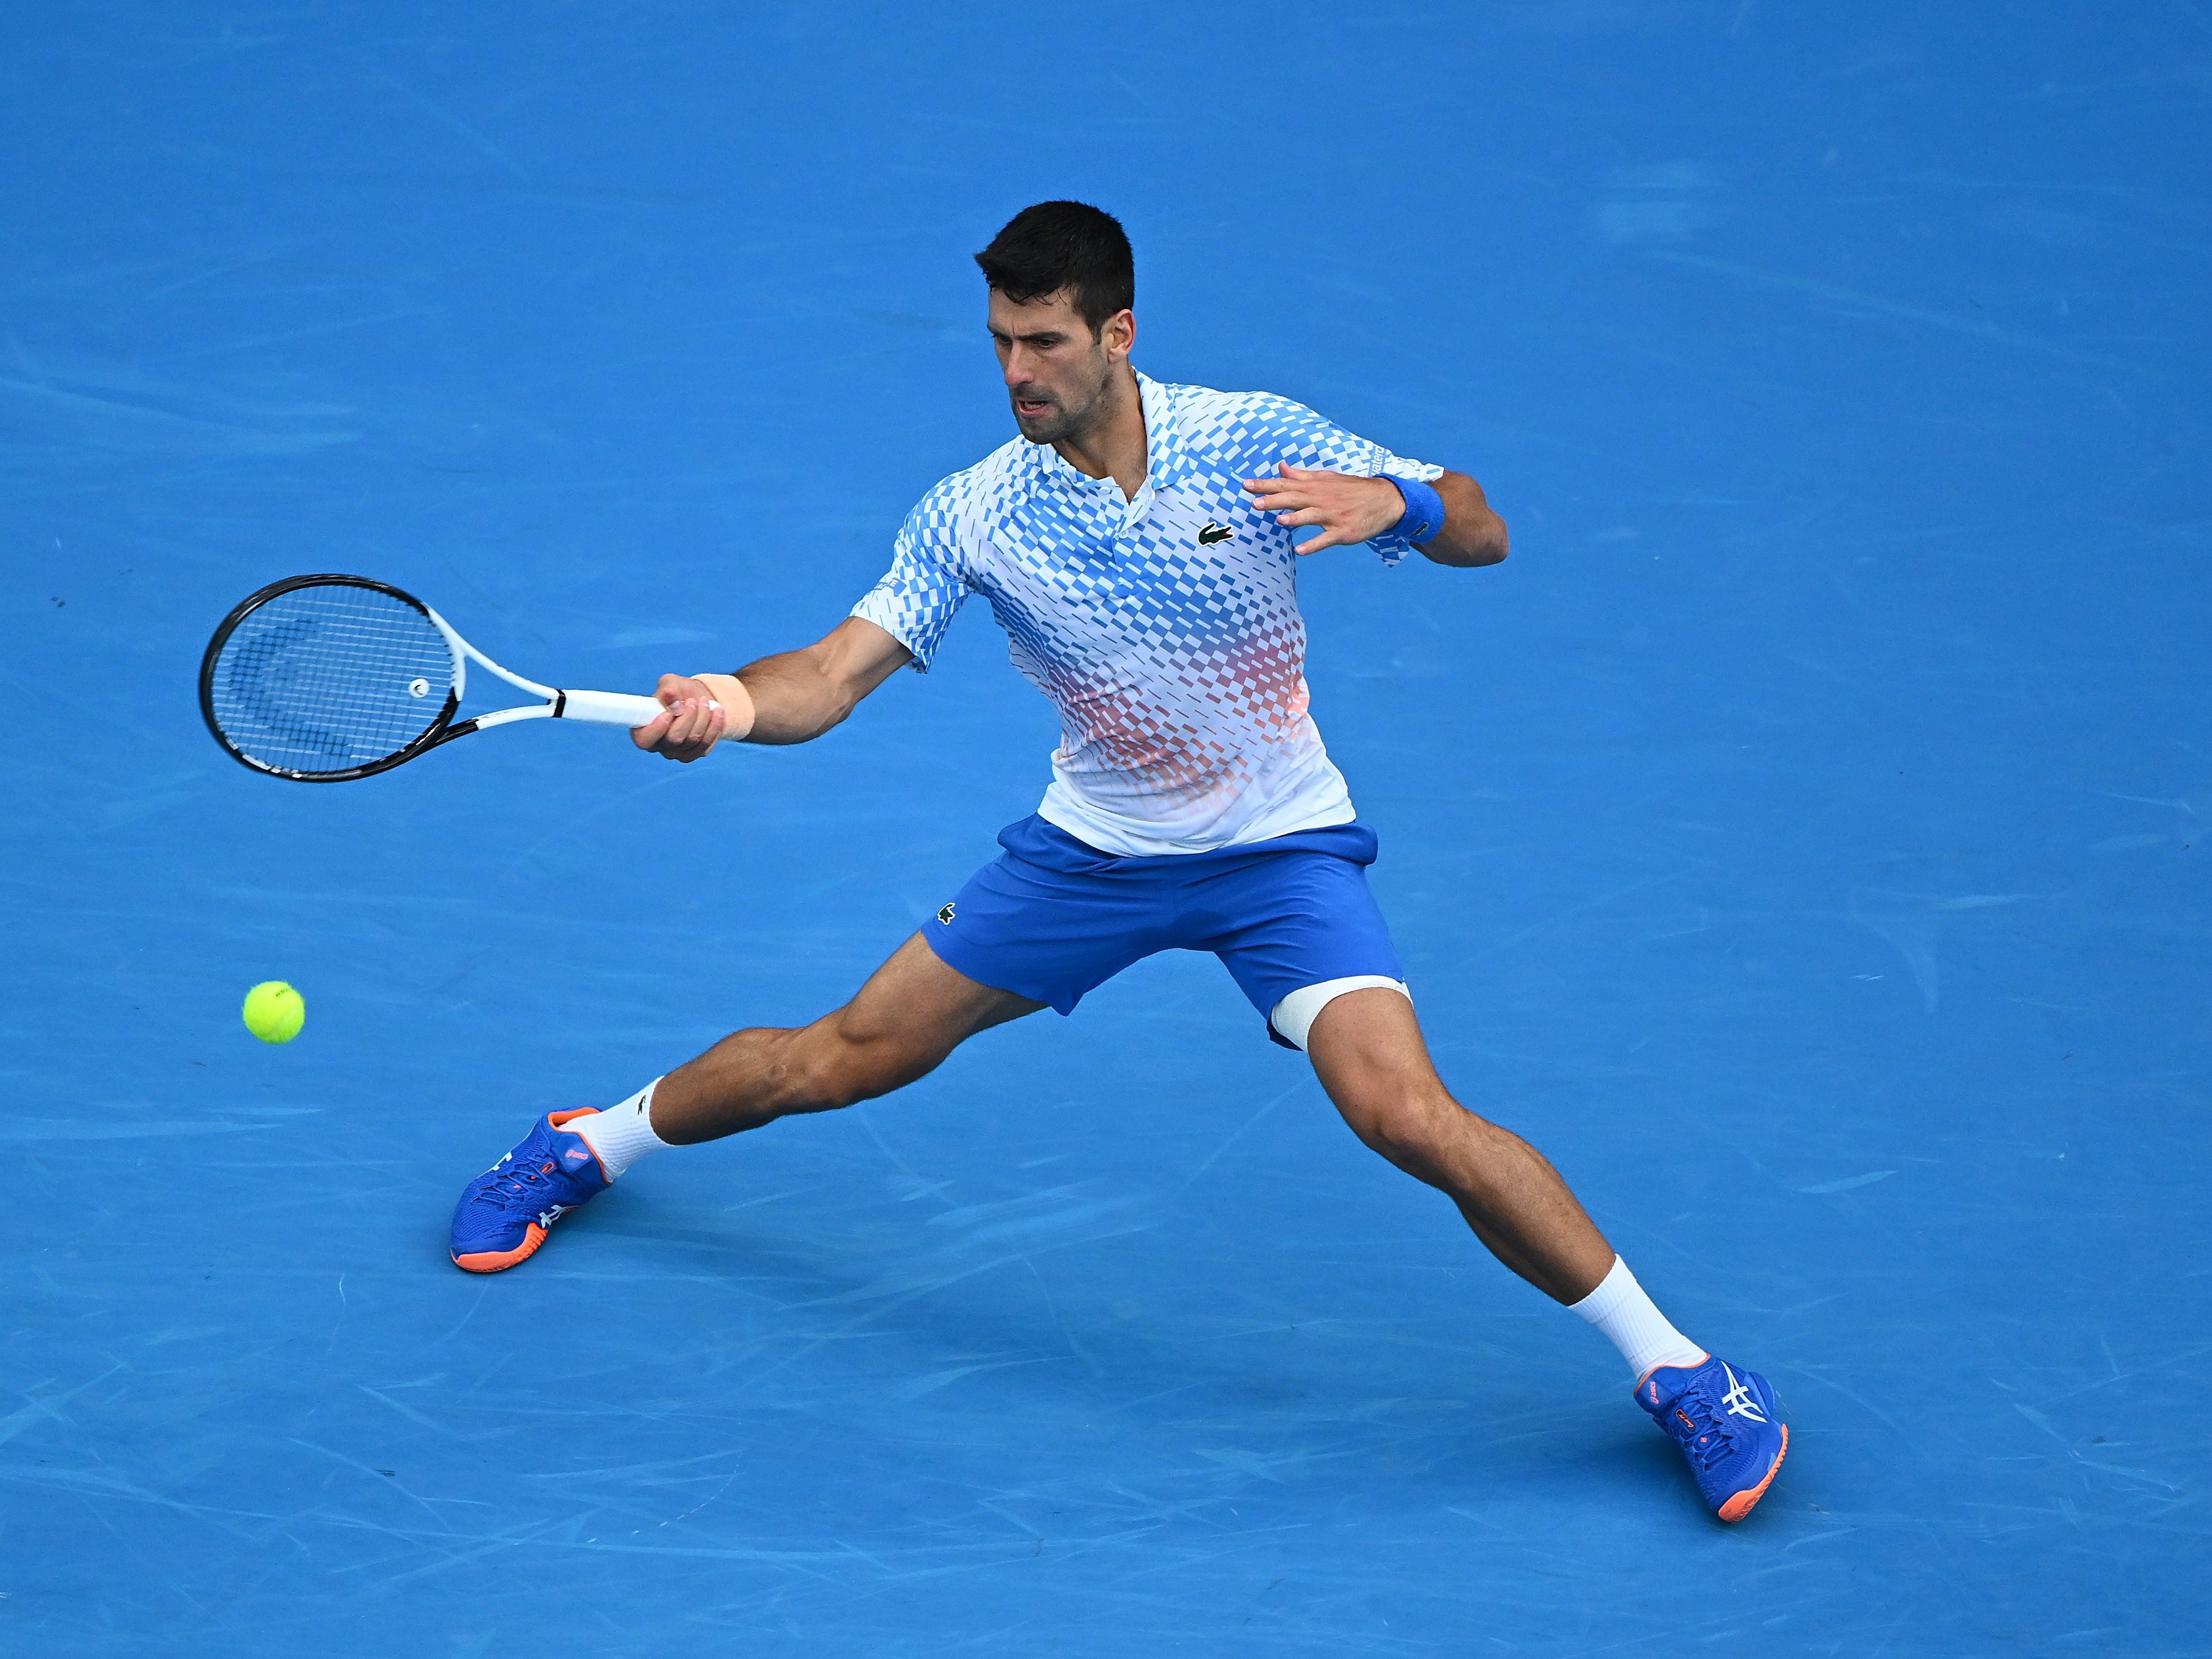 Djokovic segue invicto em 2023 (15-0) e está na semifinal em Dubai